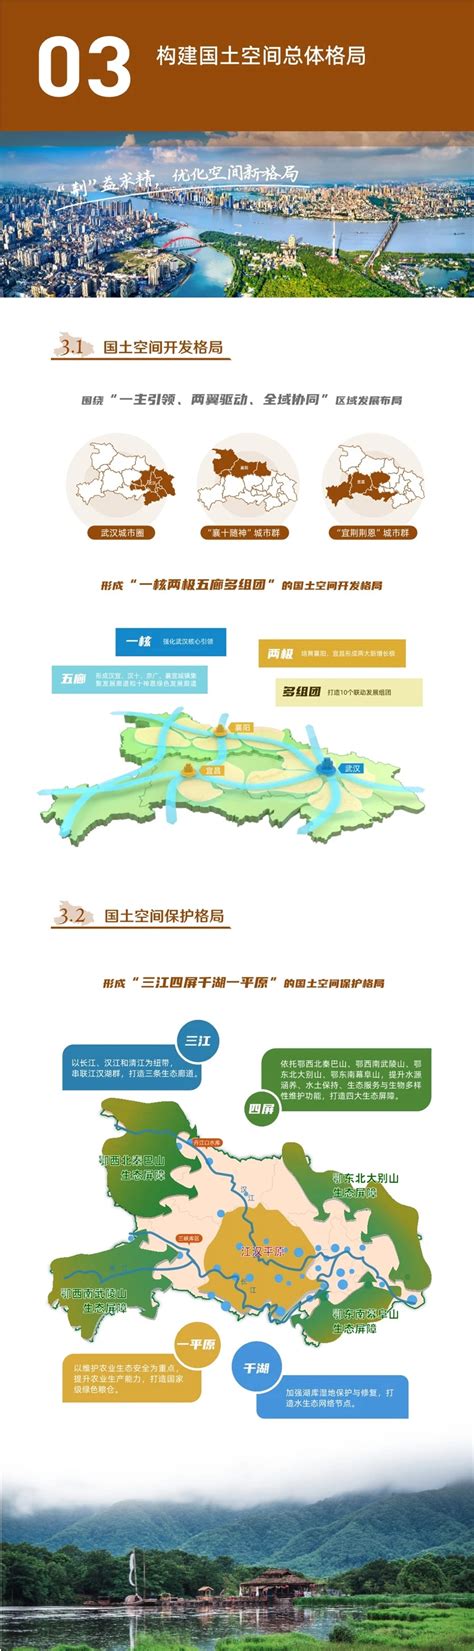 湖北日报：《中国营商环境报告2021》发布 武汉“获得用水”经验被作为典型推广